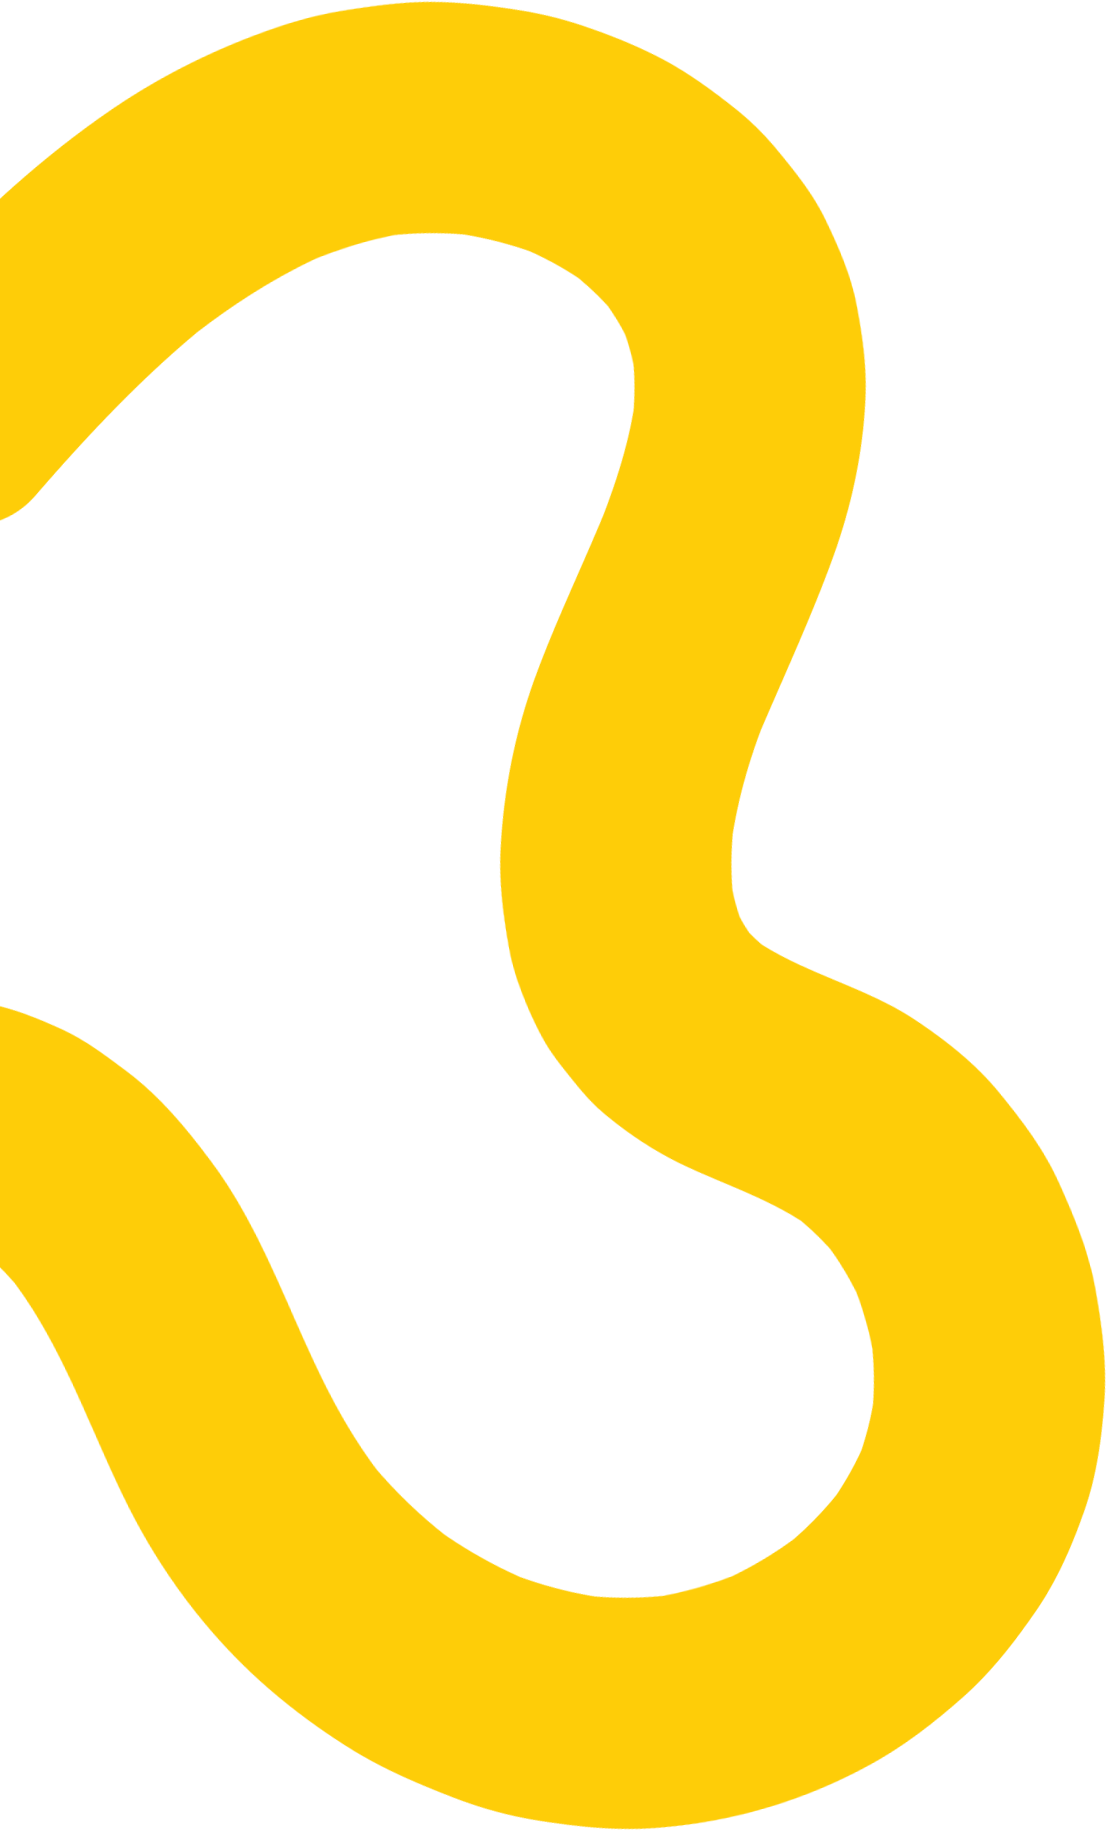 yellow loop left